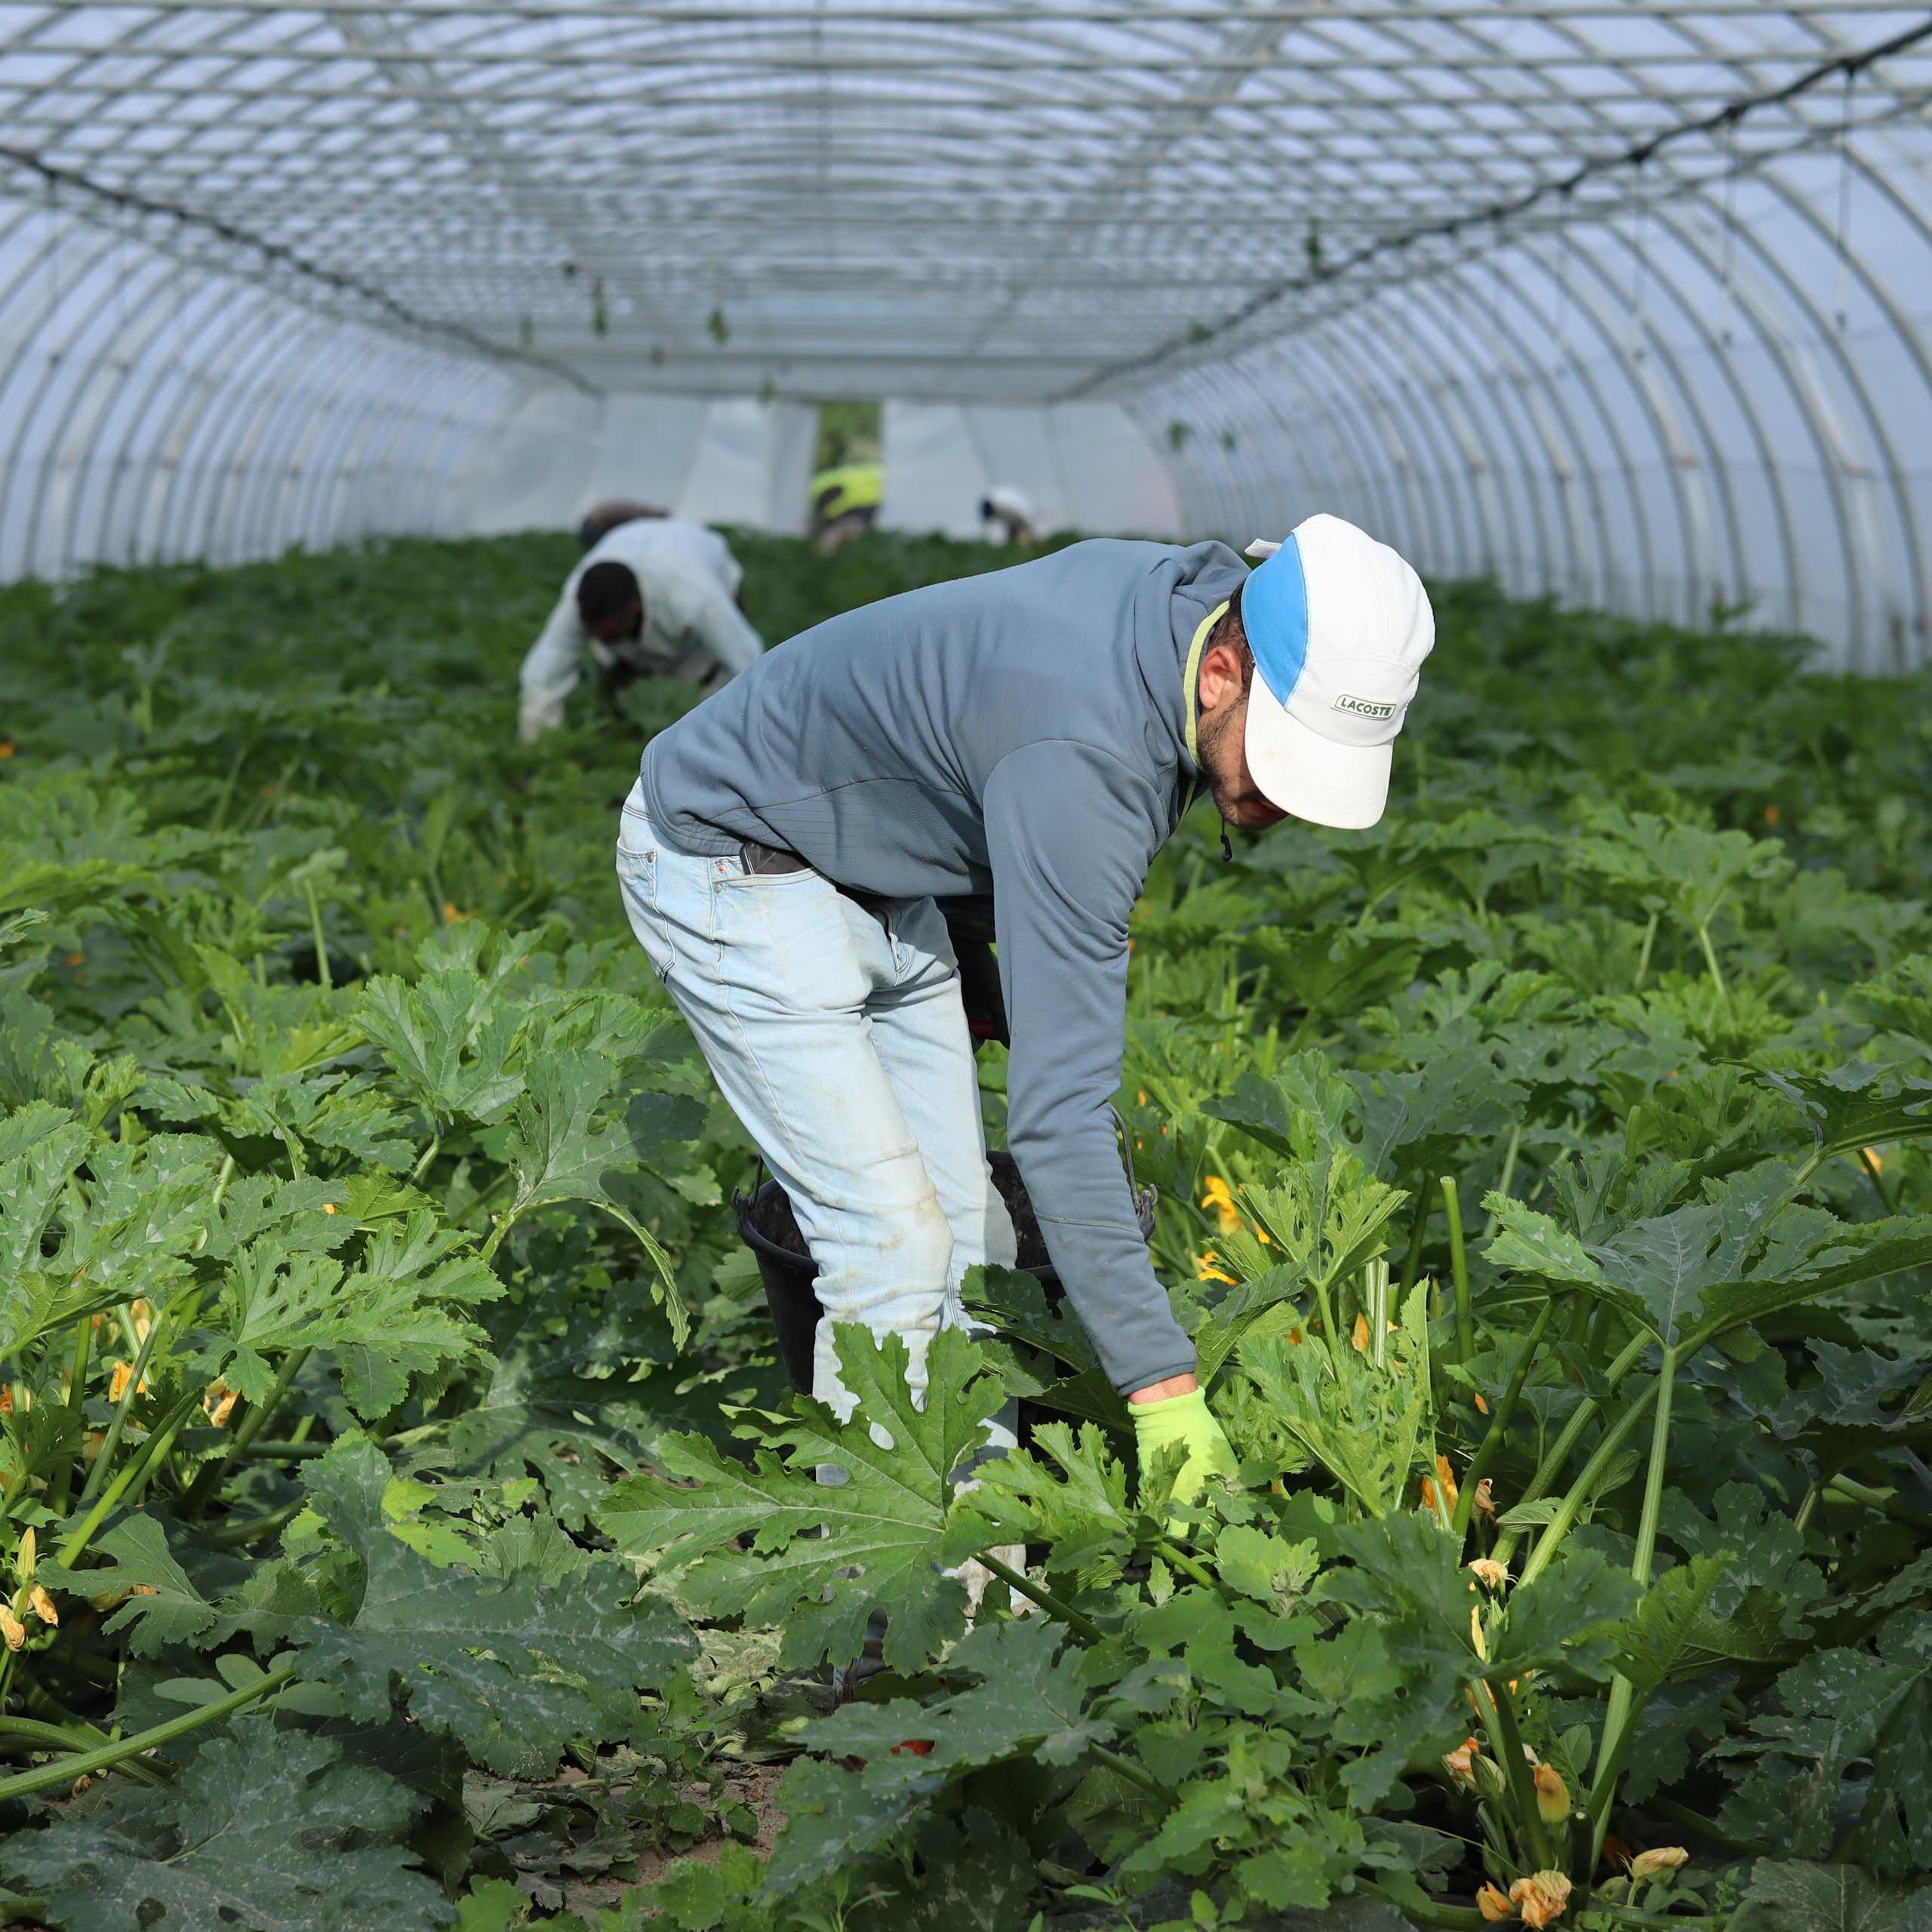 Ouvrier agricole marocain ramassant des courgettes dans une exploitation agricole (Bouches-du-Rhône, juin 2022)